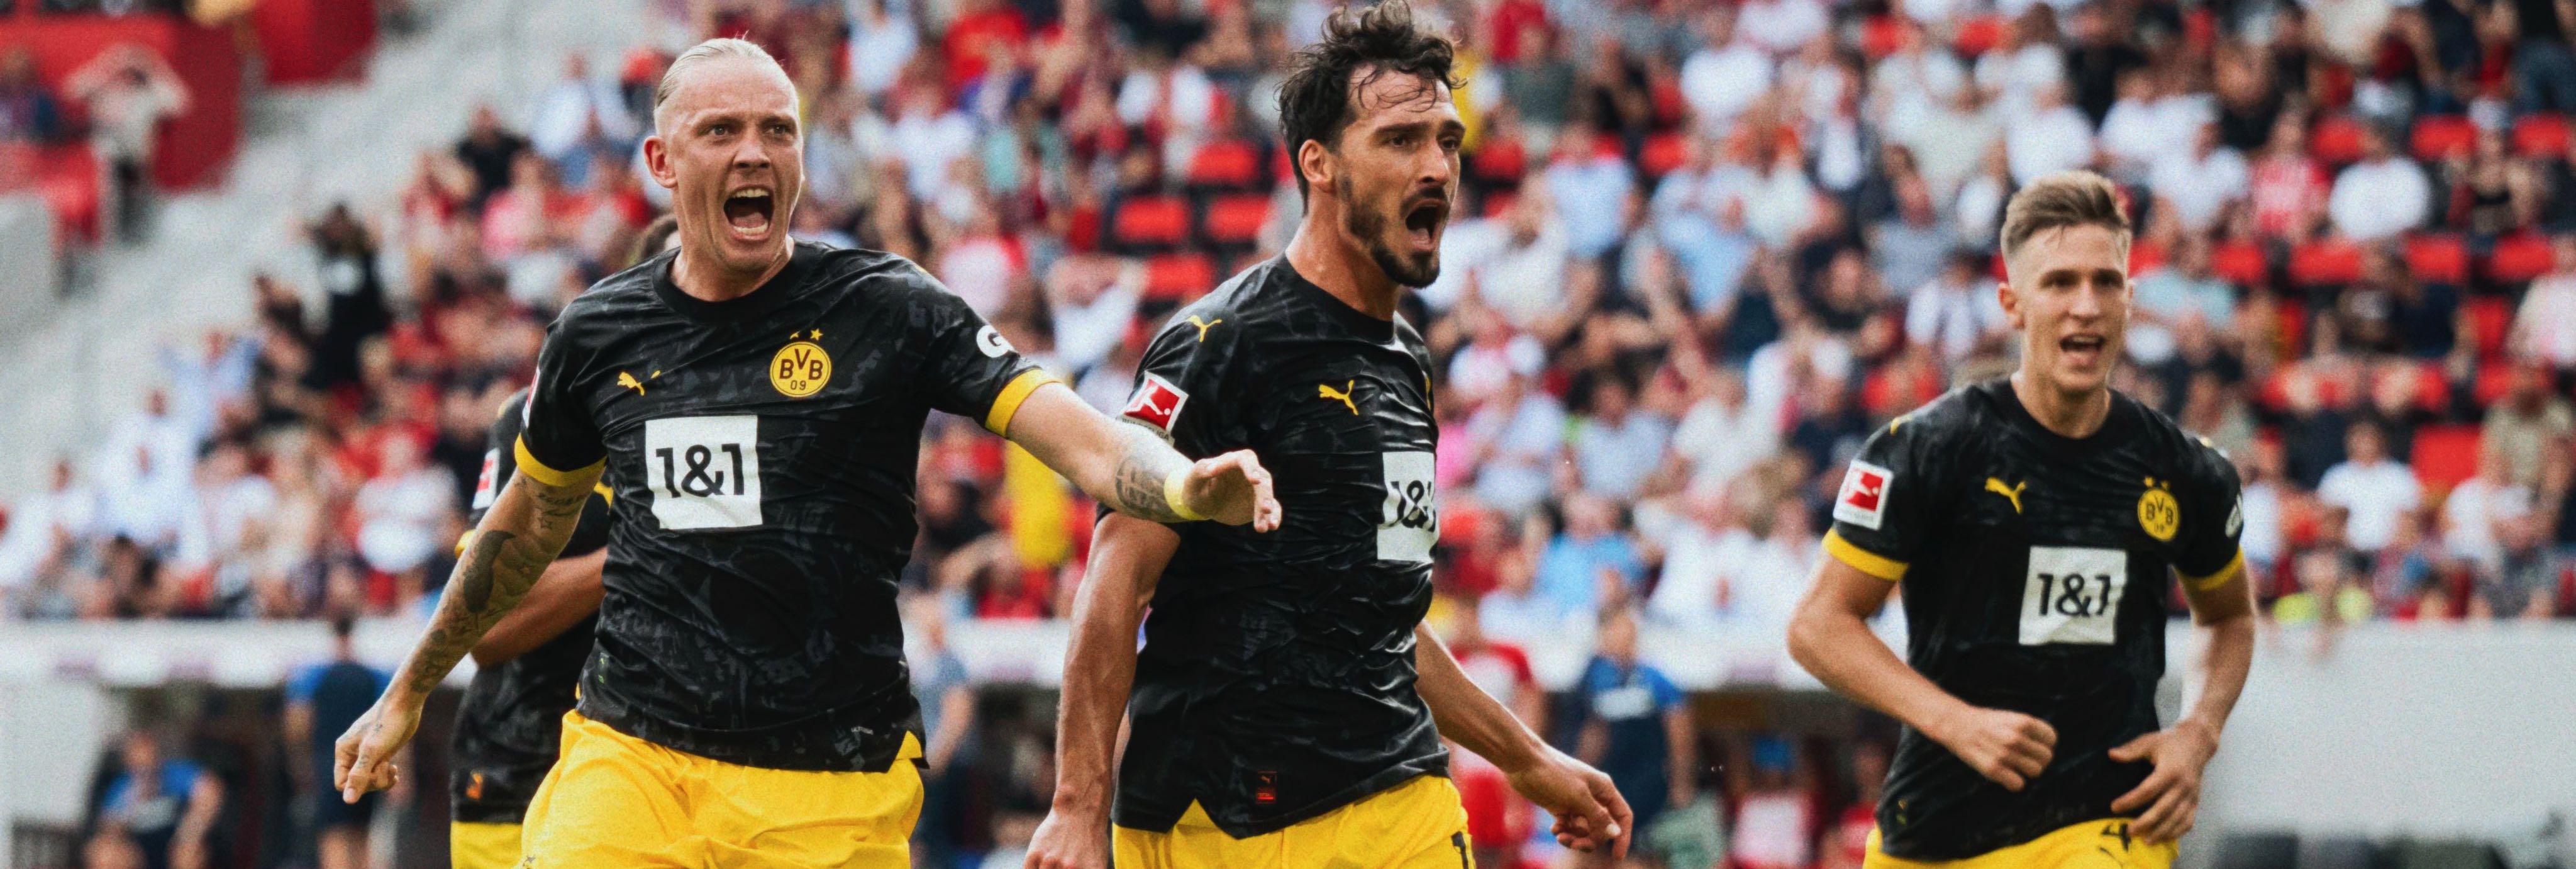 Freiburg 2-4 Dortmund: Hummels dan Reus Bawa Die Borussen Menang Comeback